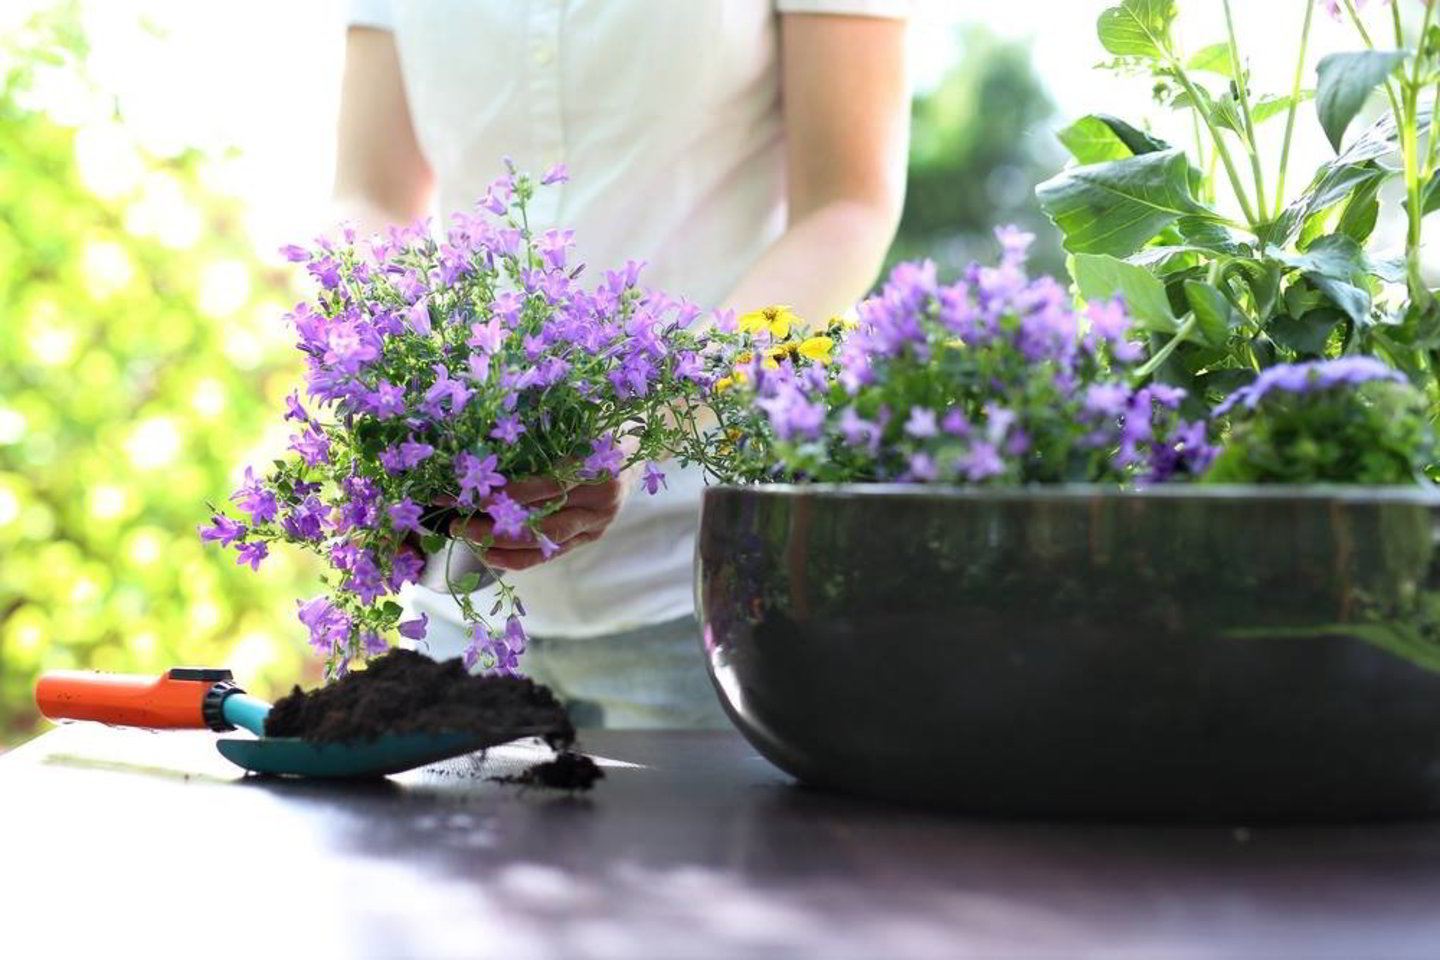  Jei tinkamai pasirinksite augalus ir susodinsite jų kompozicijas, žiedais galėsite džiaugtis visą sezoną.<br>„Shutterstock“ nuotr.